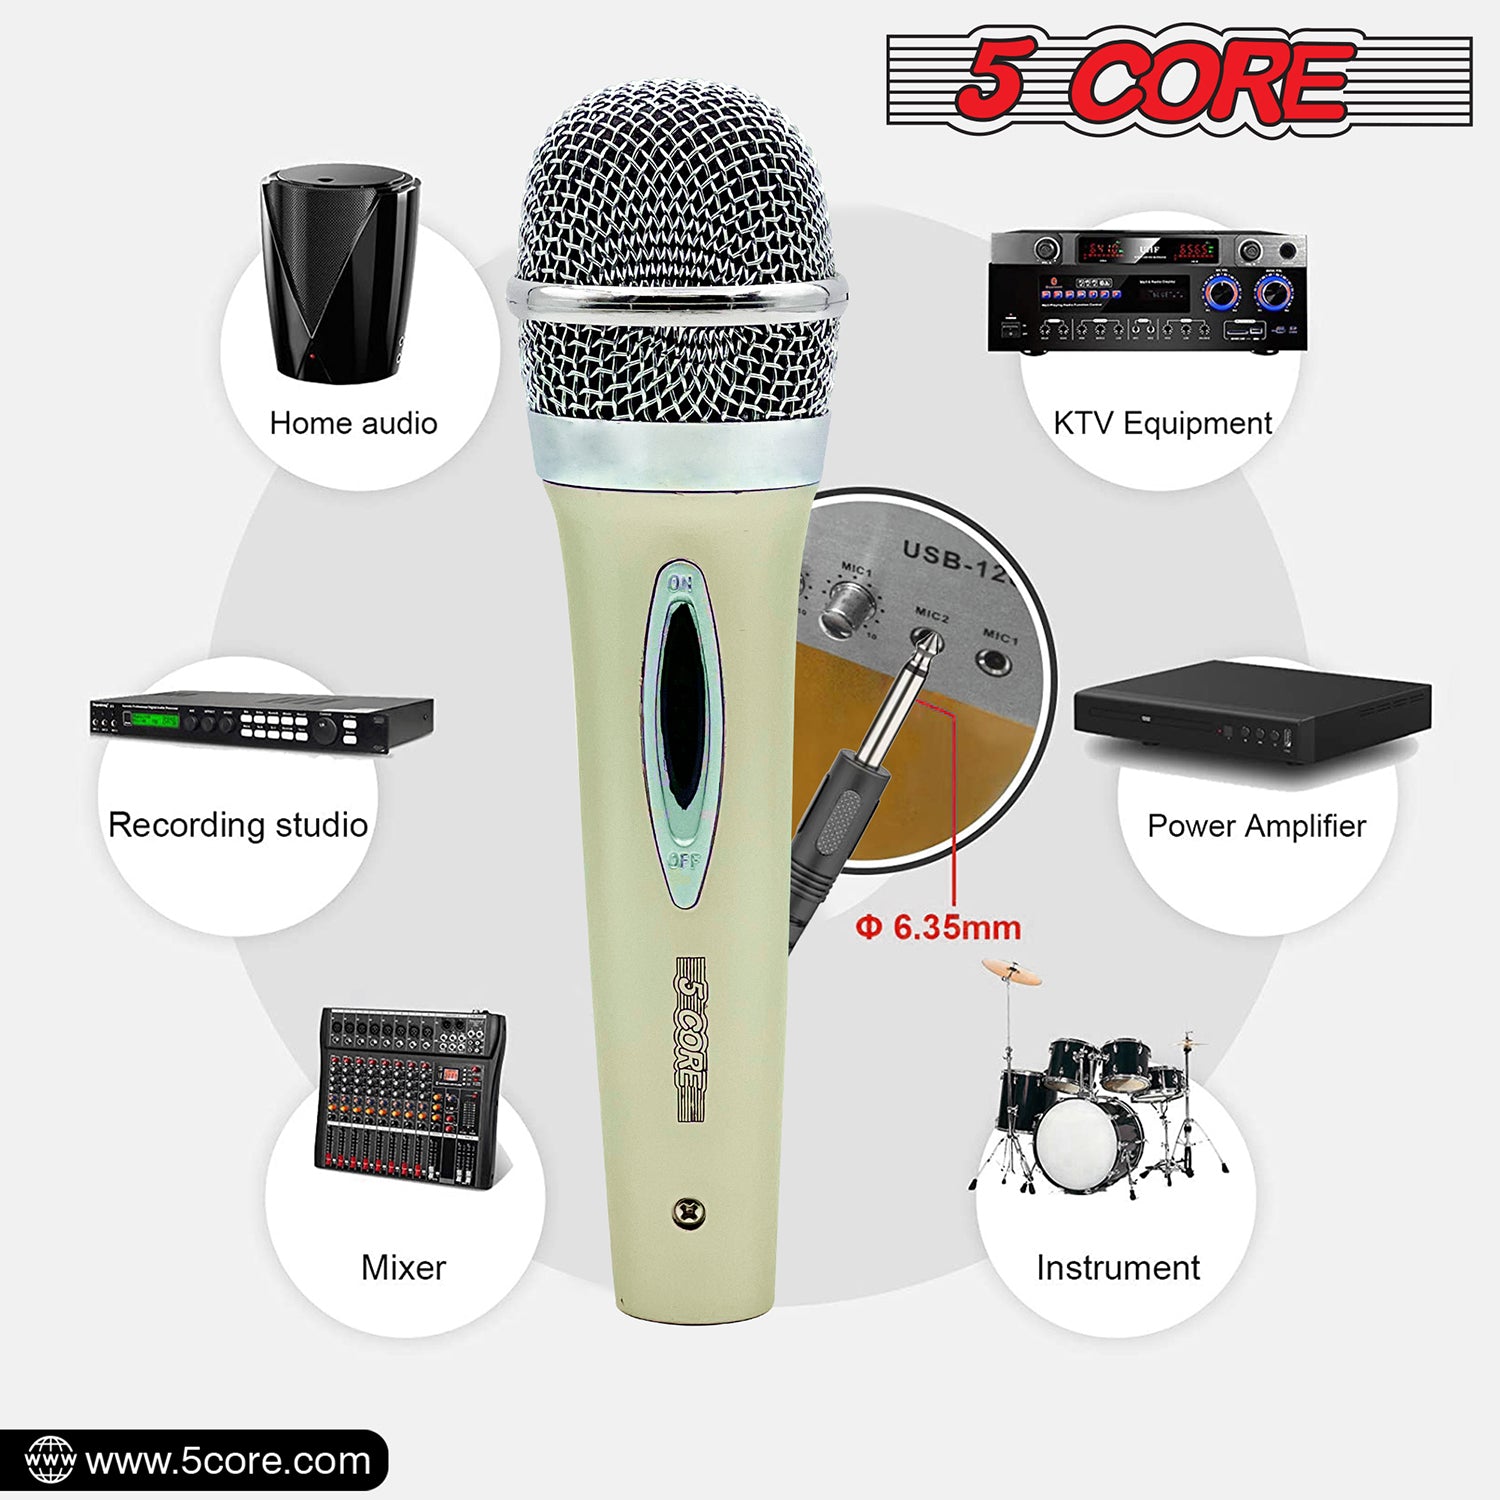 5 núcleo micrófono pro microfono microfono Mic XLR Audio Cardiod Vocal Karaoke PM 286 WH